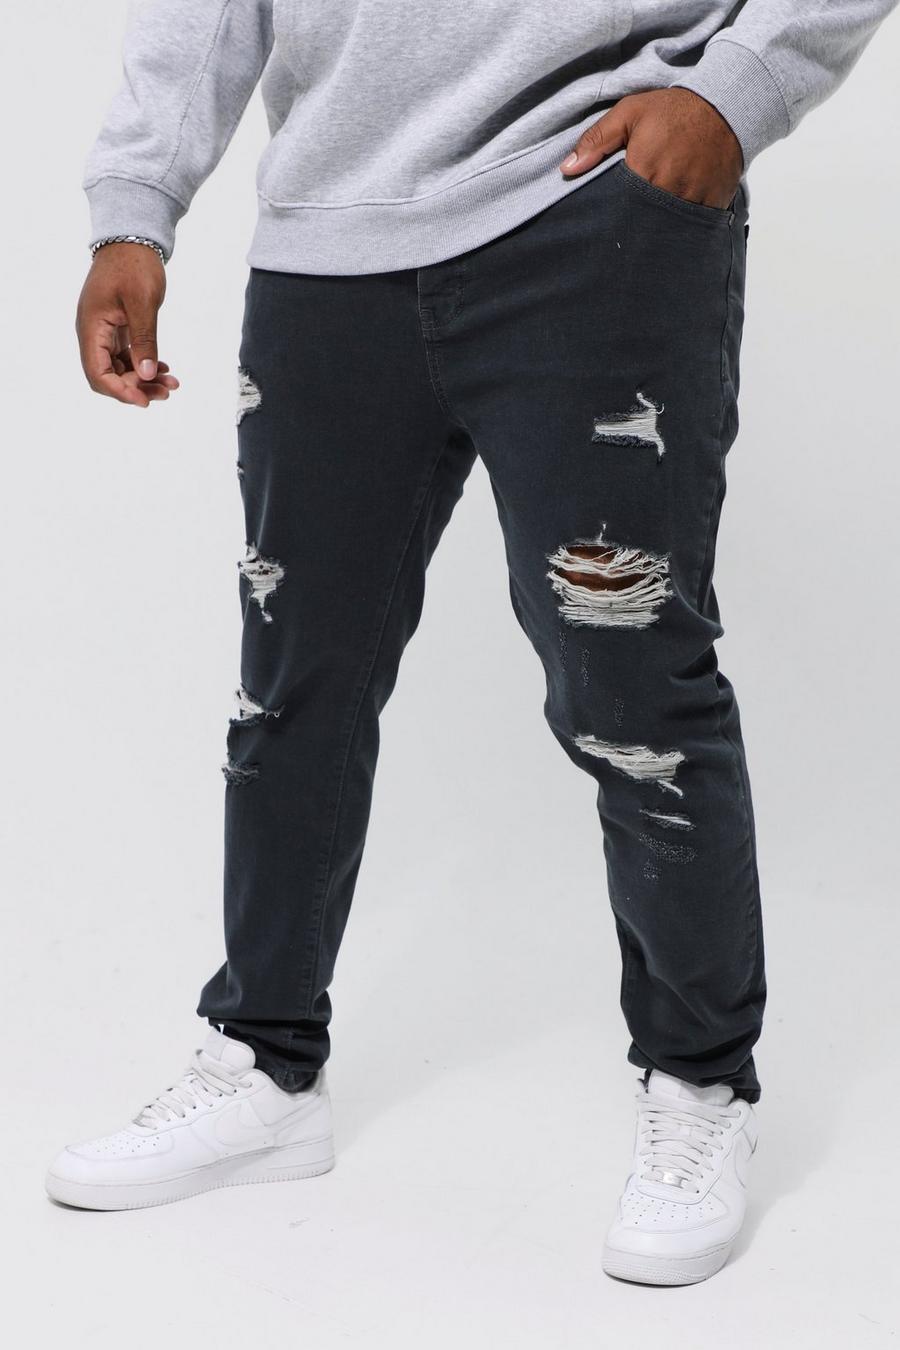 אפור כהה grigio סקיני ג'ינס מבד נמתח עם קרעים לכל האורך למידות גדולות